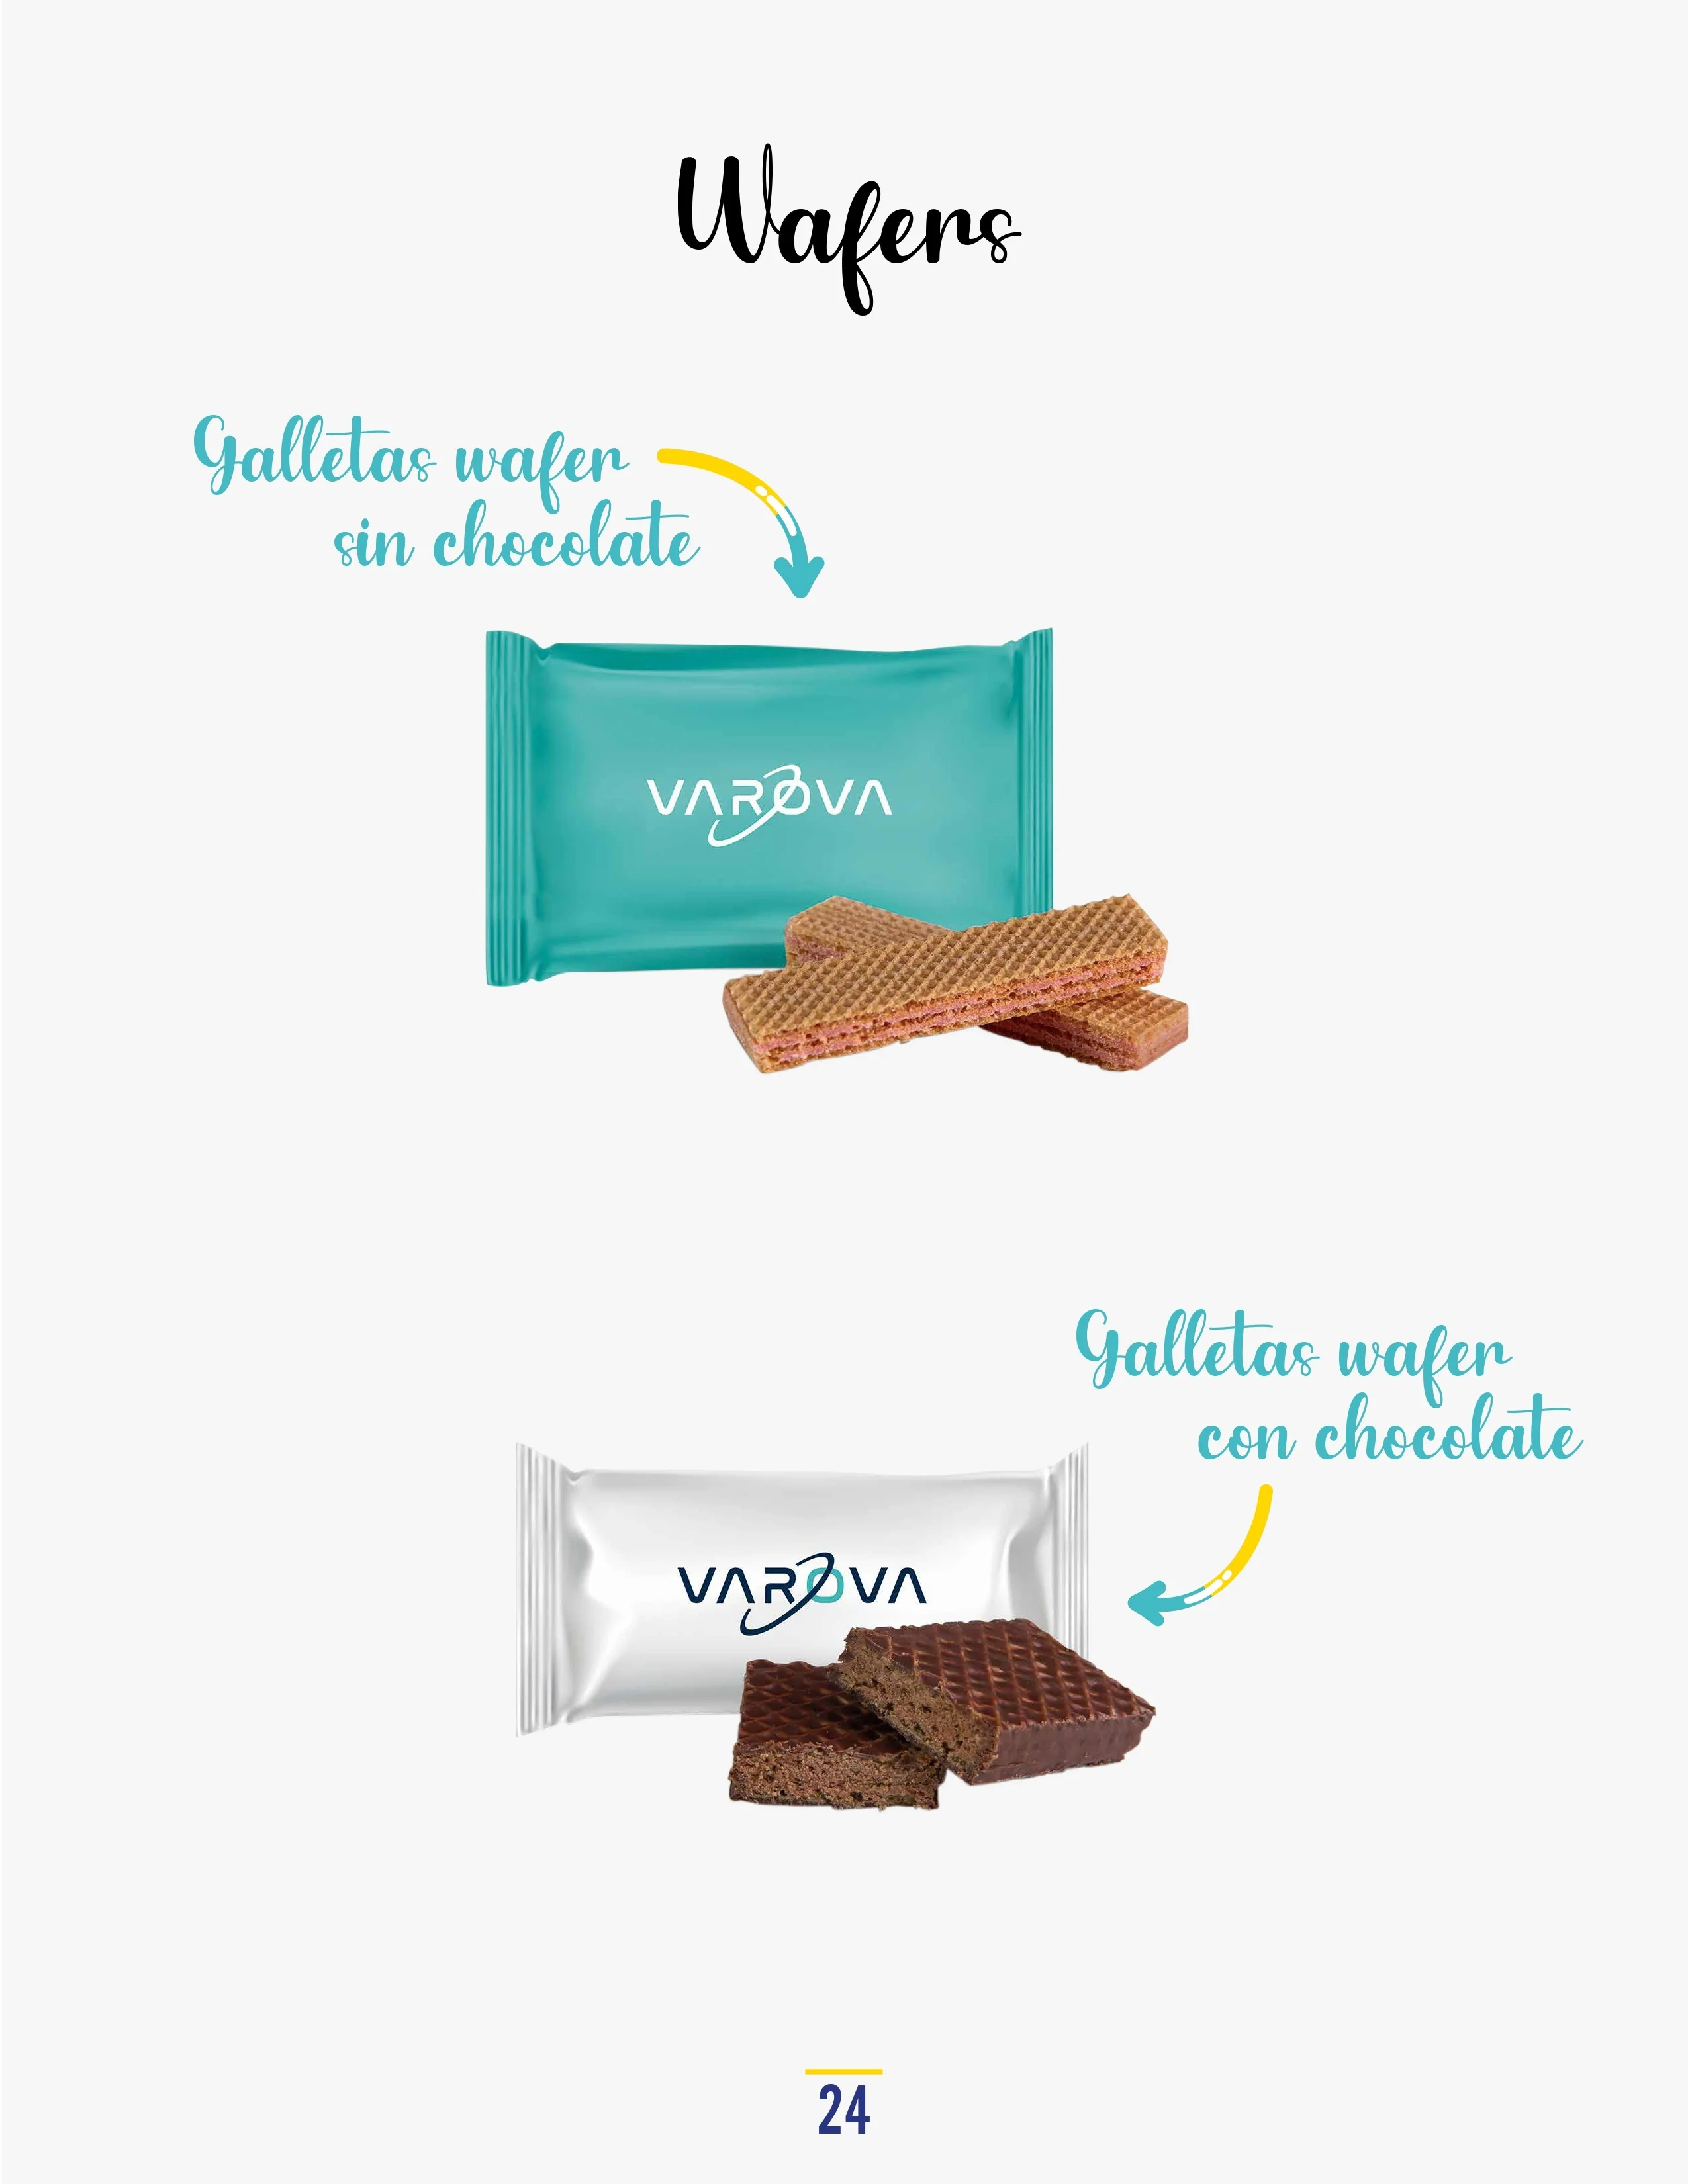 Catálogo de Productos Varova wafers con sin chocolates personalizados corporativos